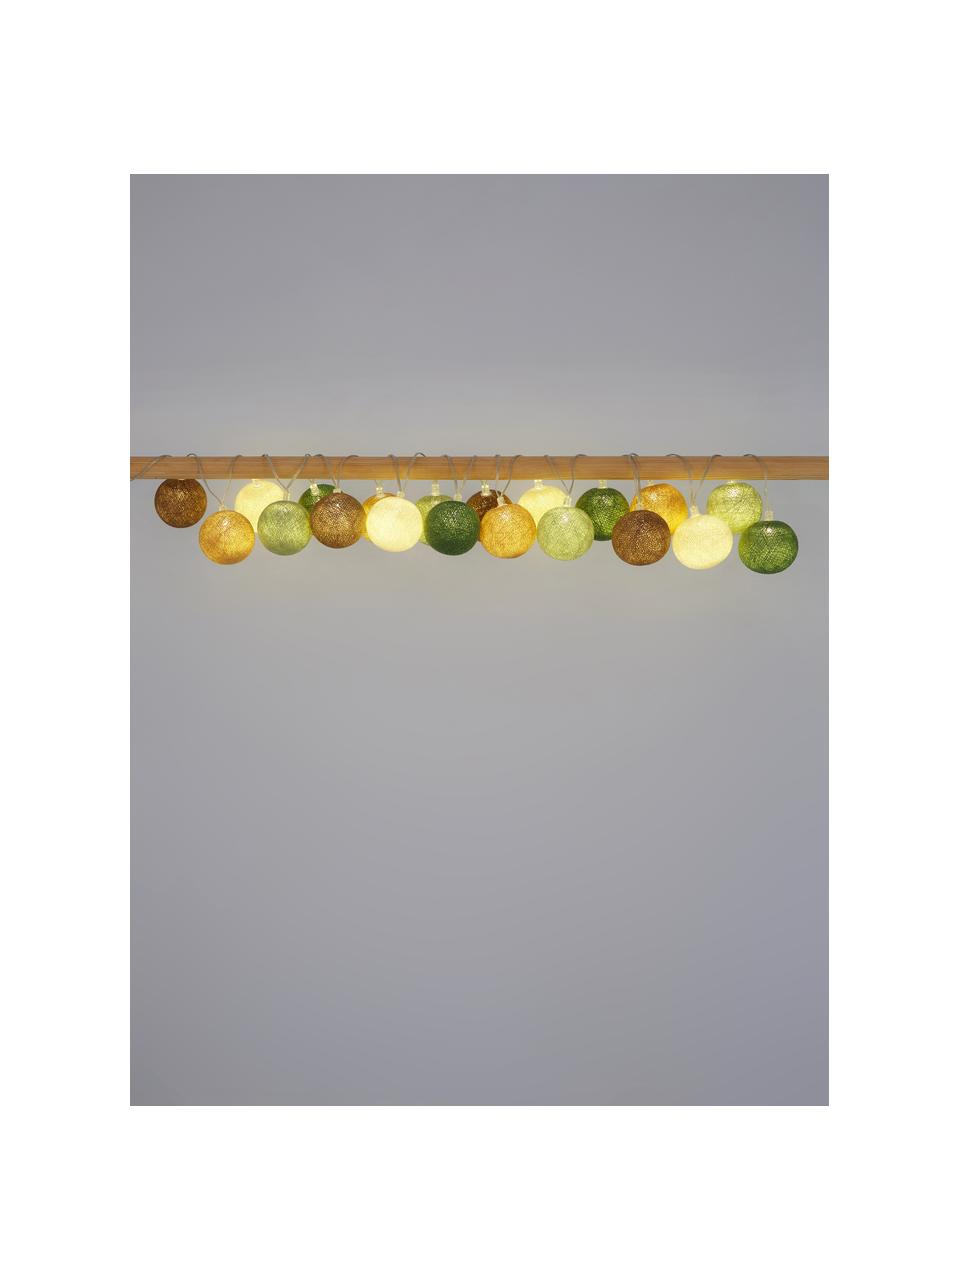 Světelný LED řetěz Colorain, 378 cm, Béžová, odstíny hnědé, odstíny zelené, D 378 cm